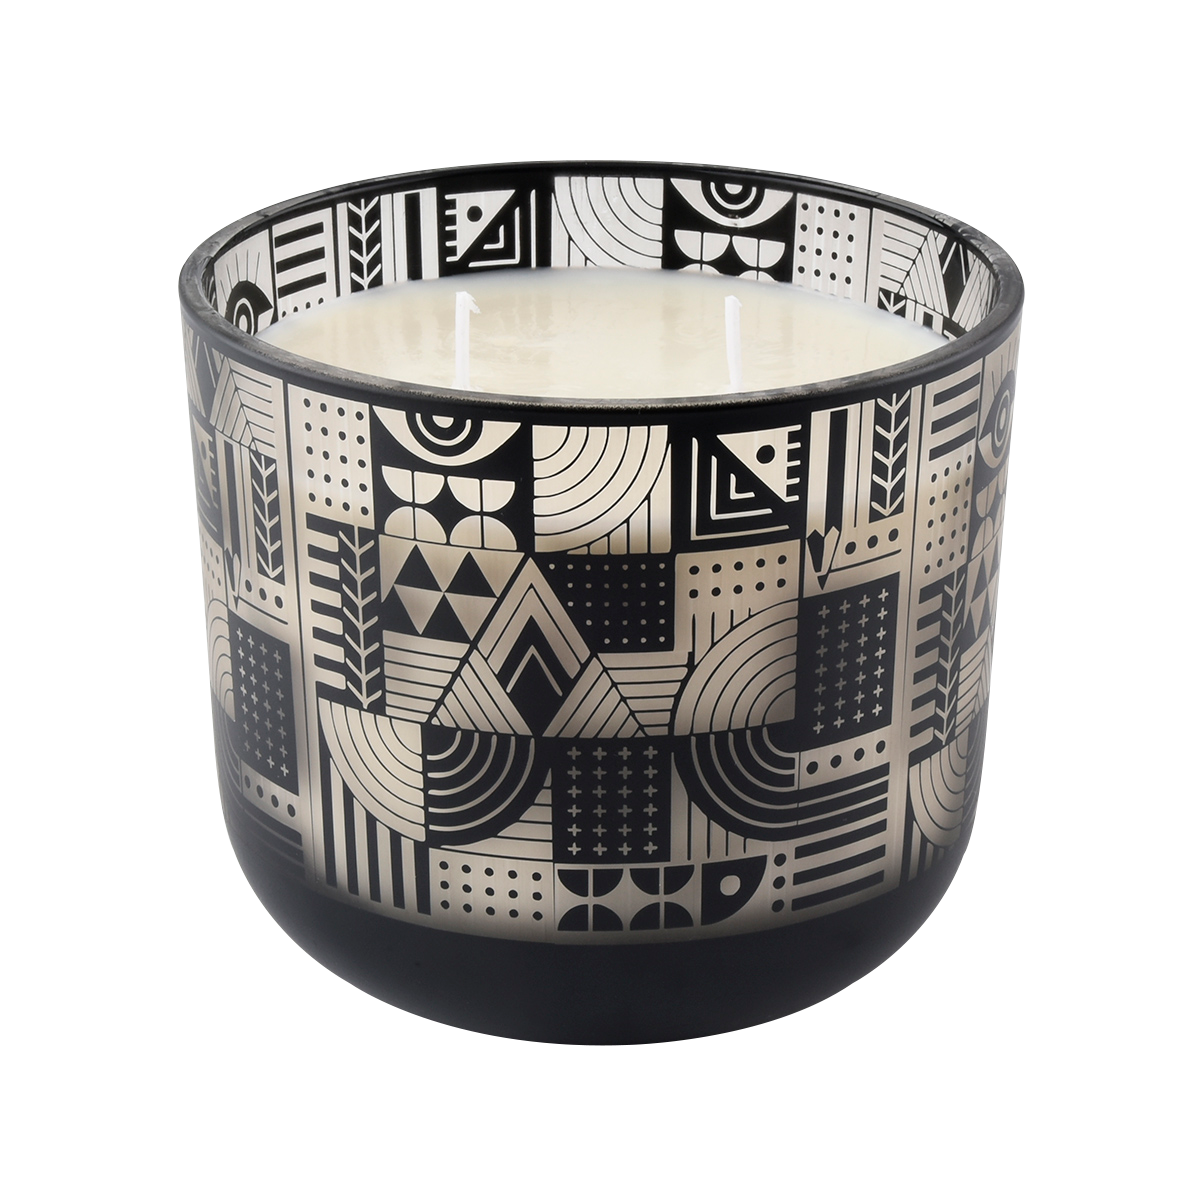 1000ml黑色玻璃蜡烛罐几何图案设计激光雕刻处理